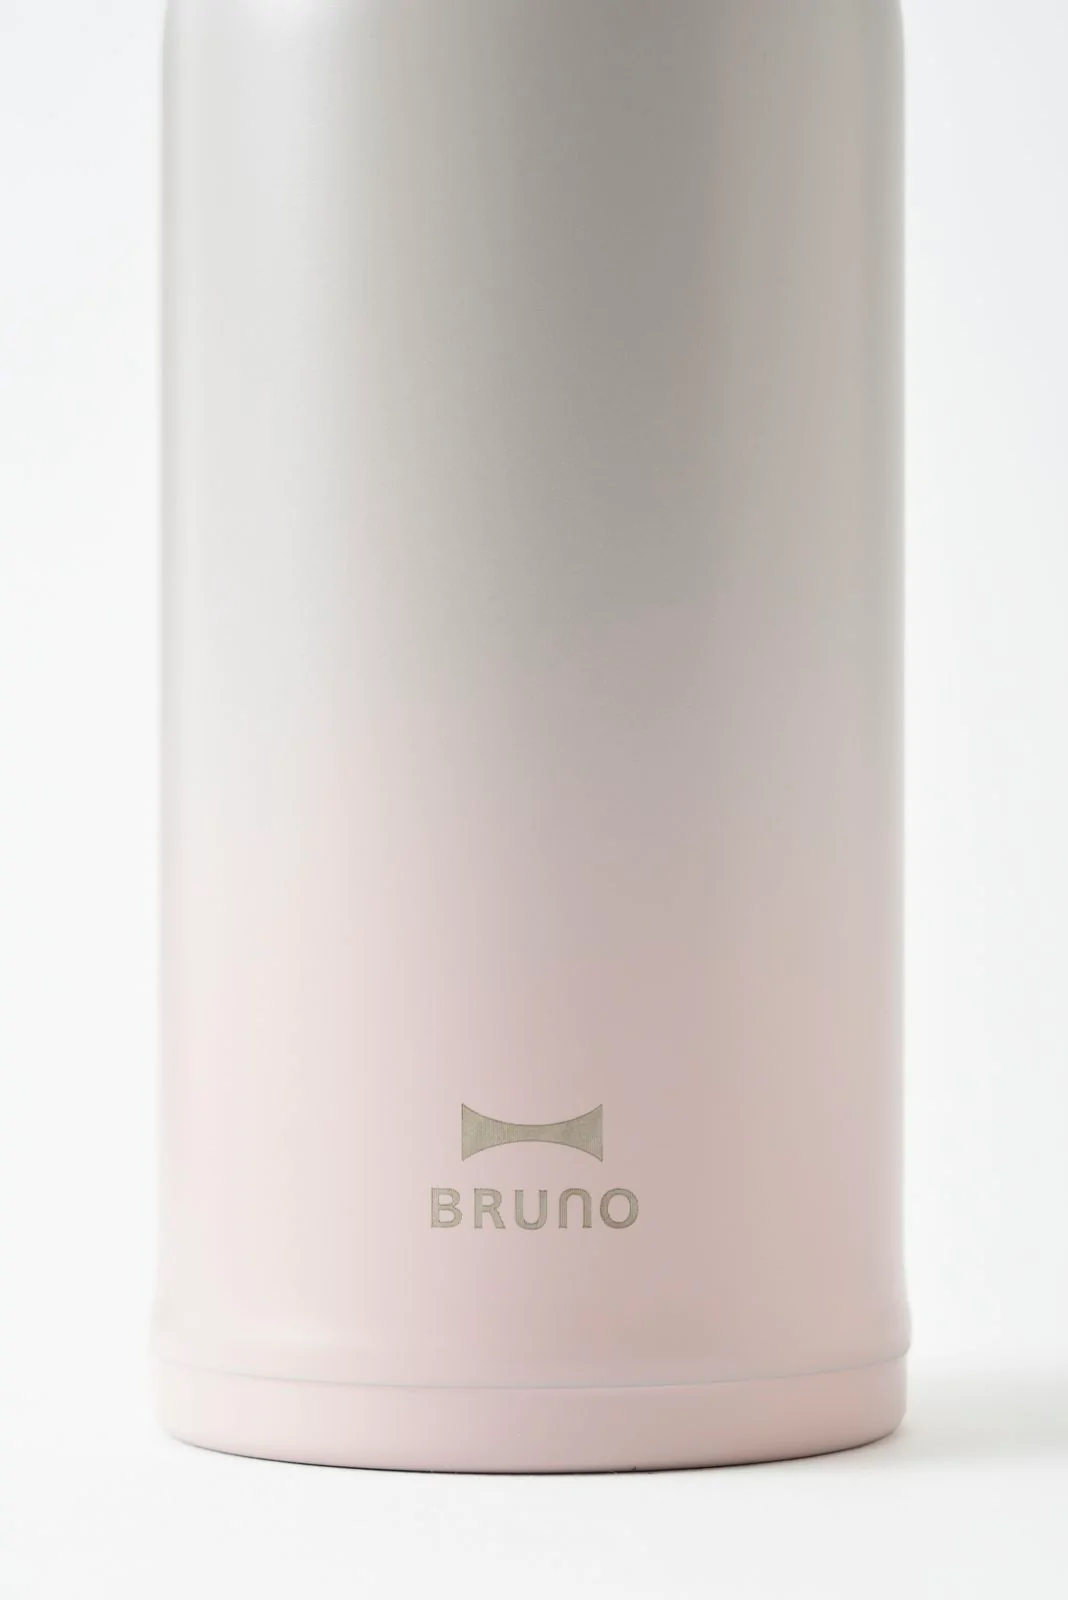 BRUNO Lightweight S/S Screw Bottle medium  350ML